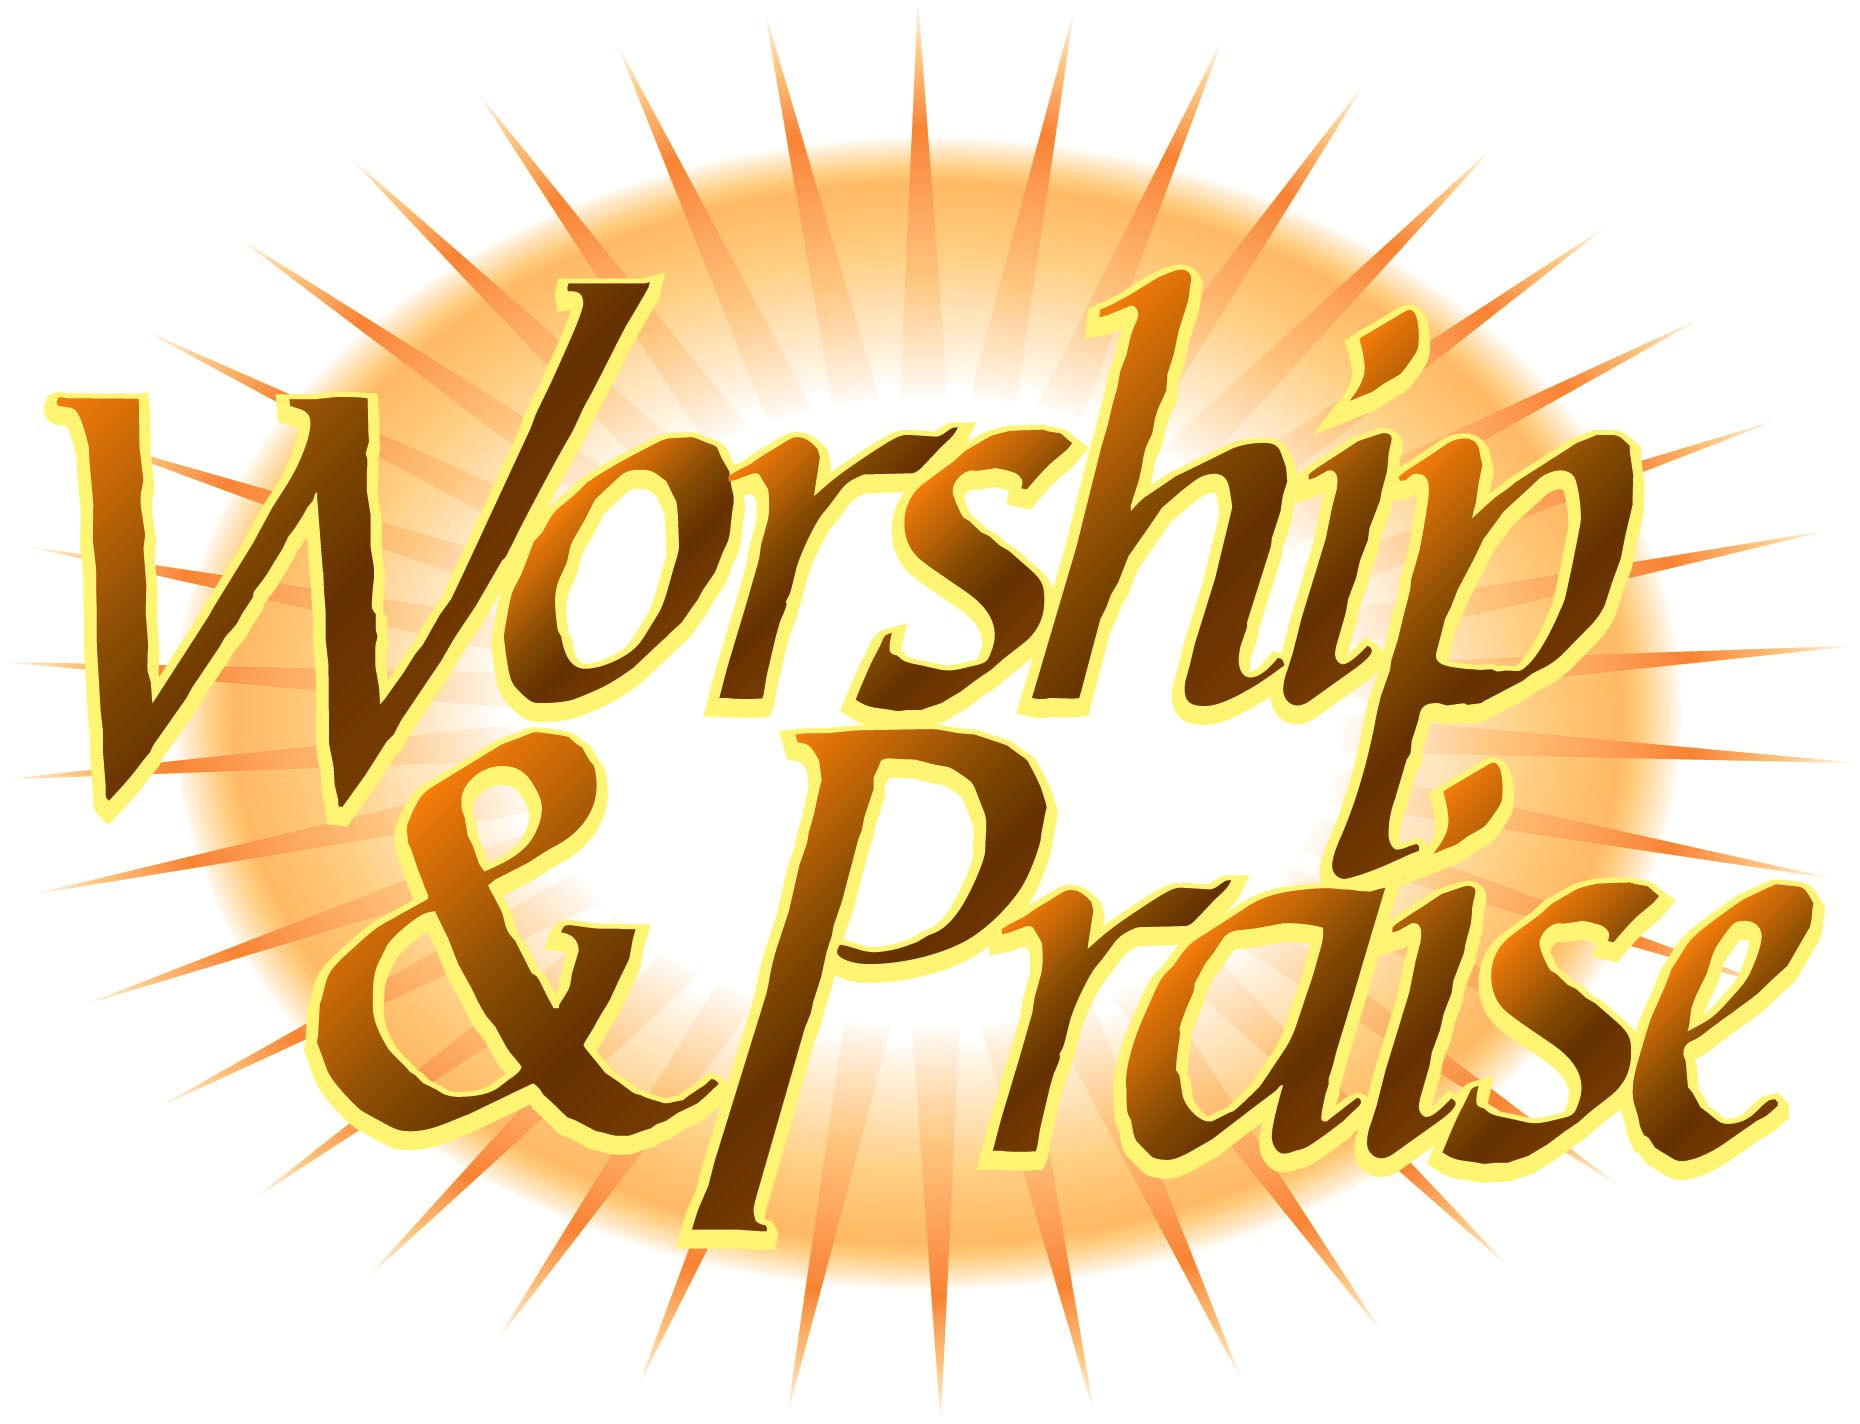 Worship & Praise | Praise & Worship | Pinterest